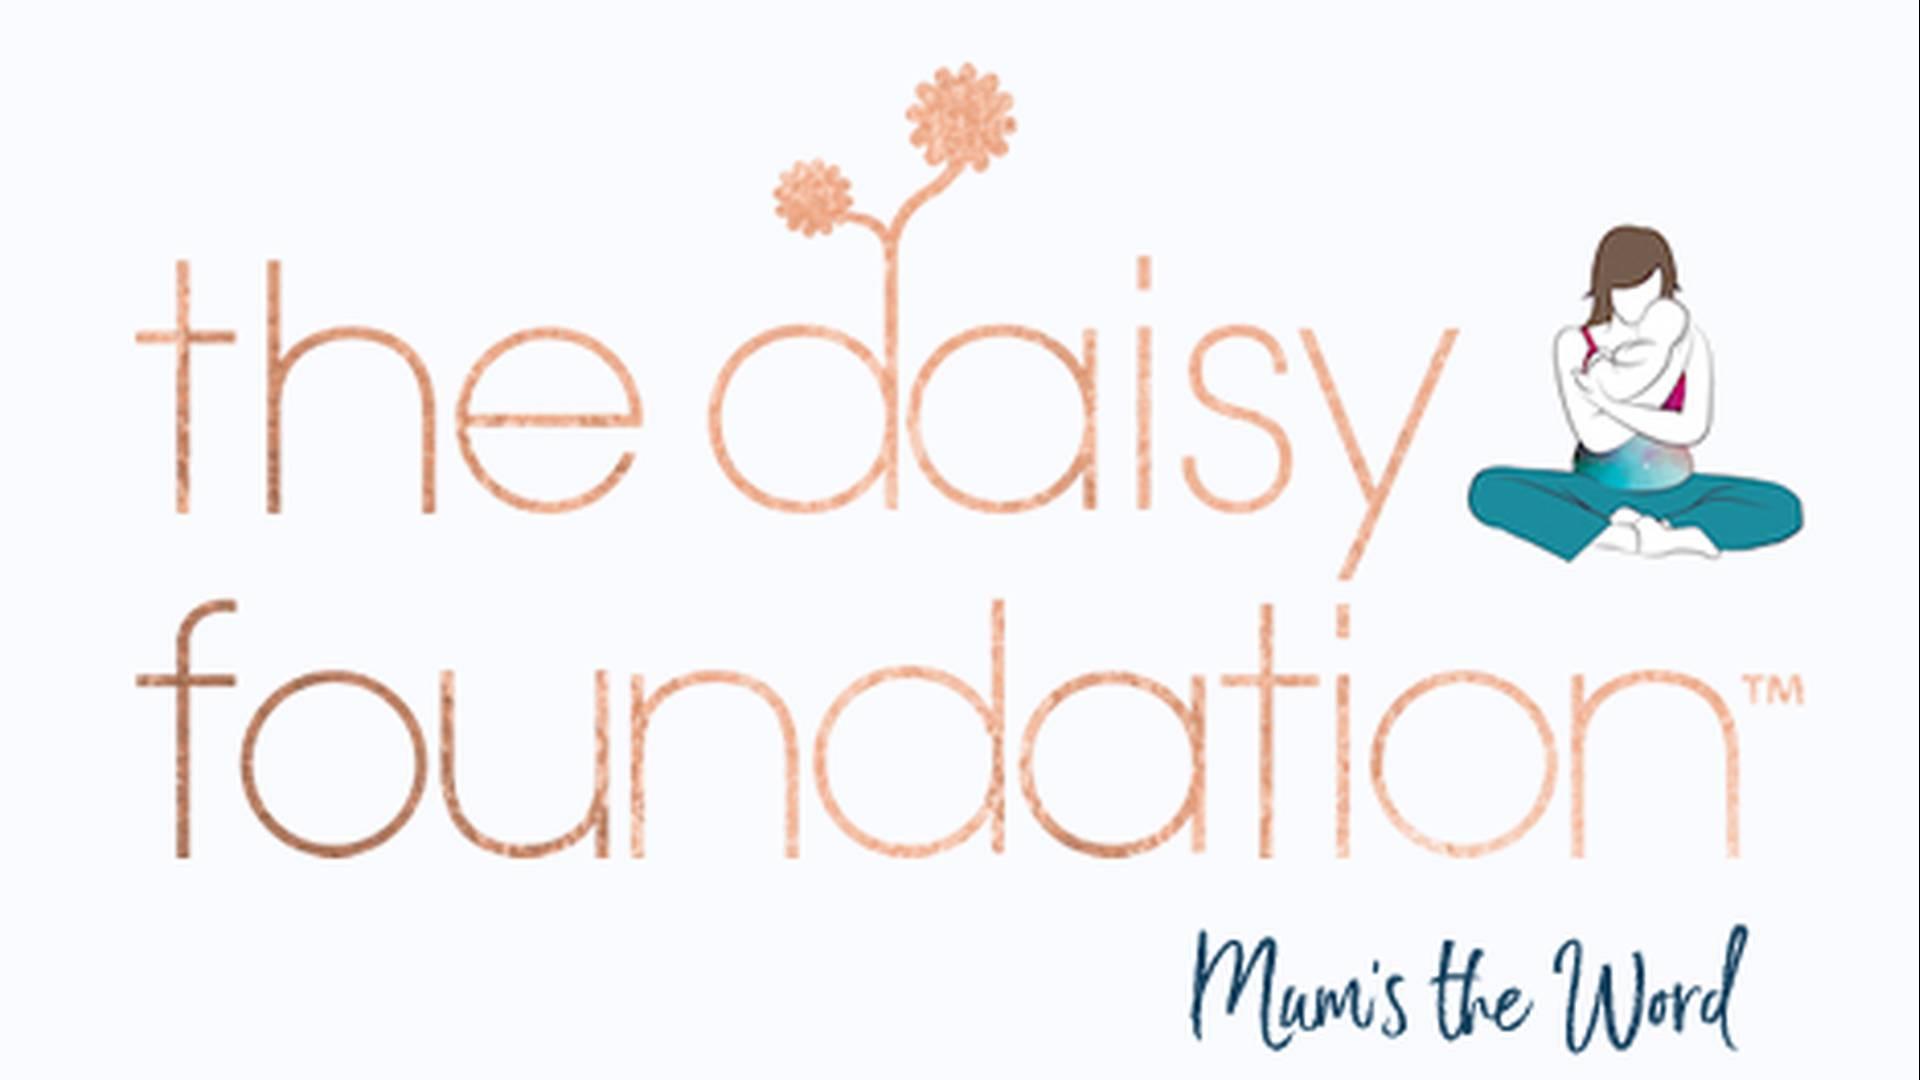 The Daisy Foundation photo